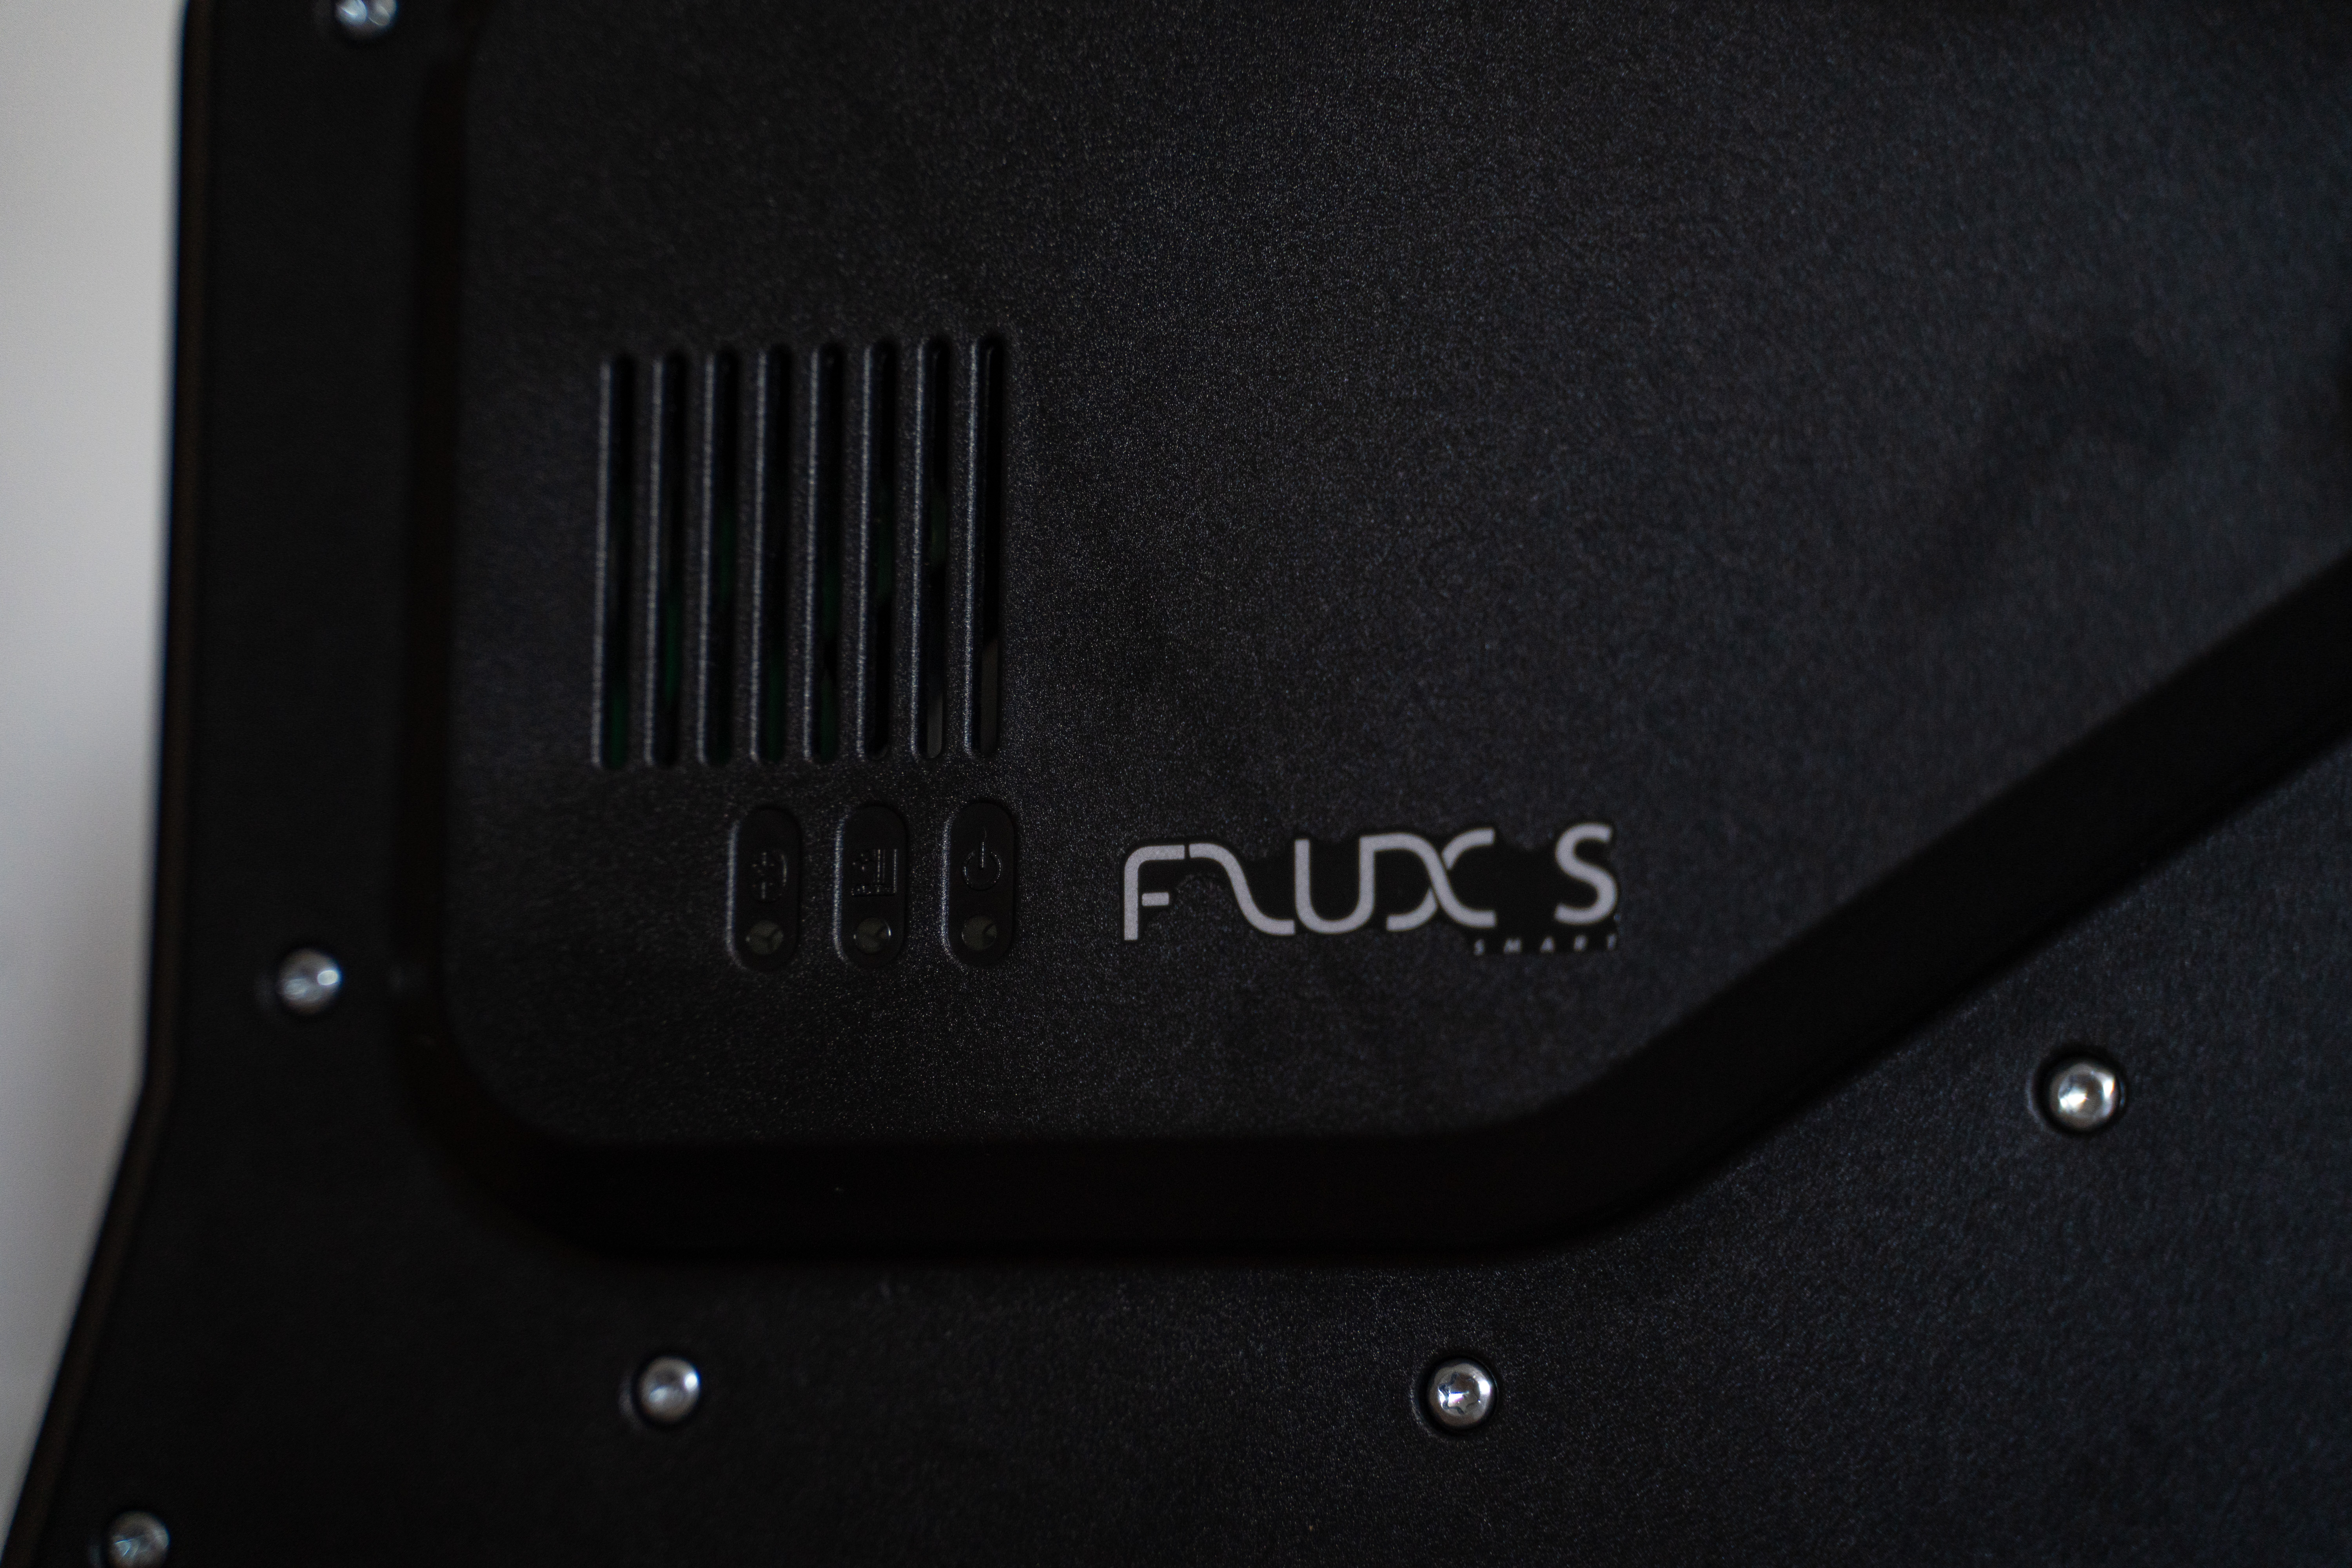 Tacx Flux S - logo